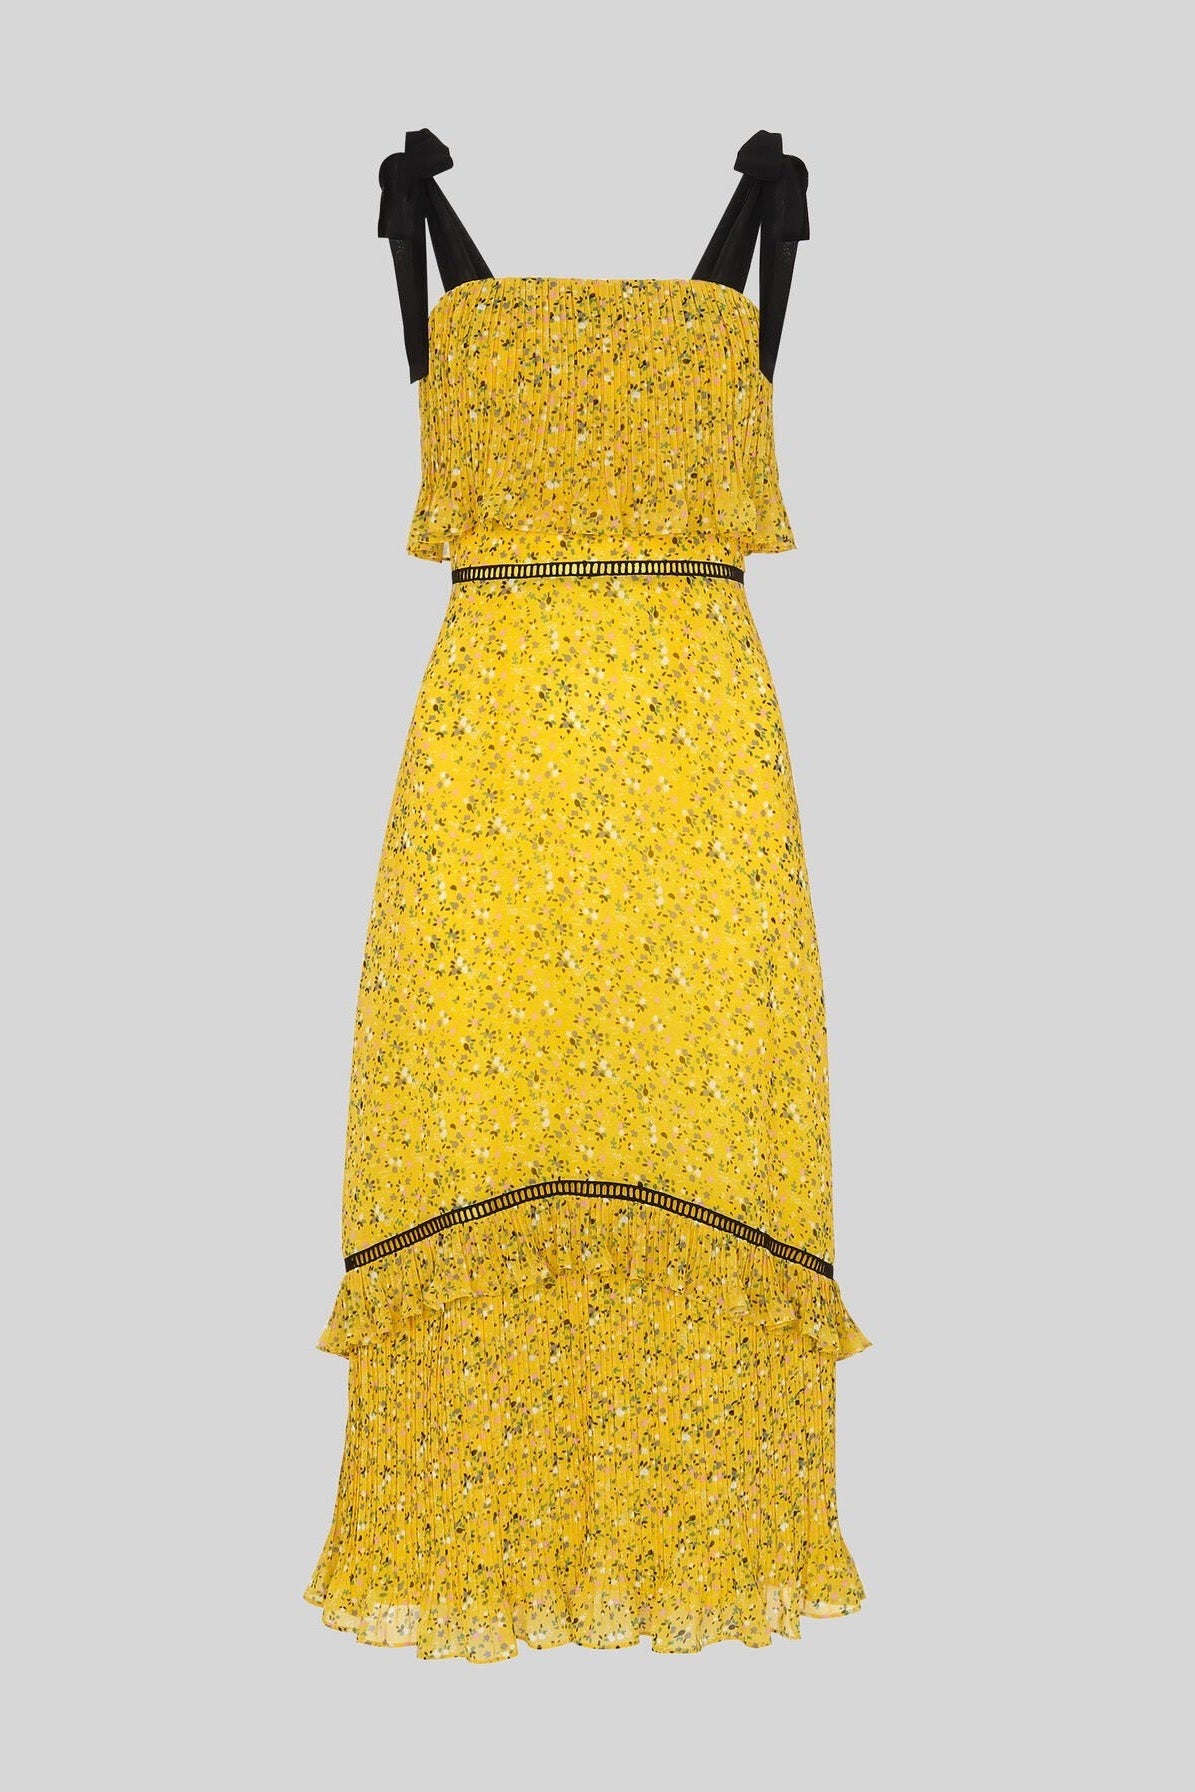 the levé dress